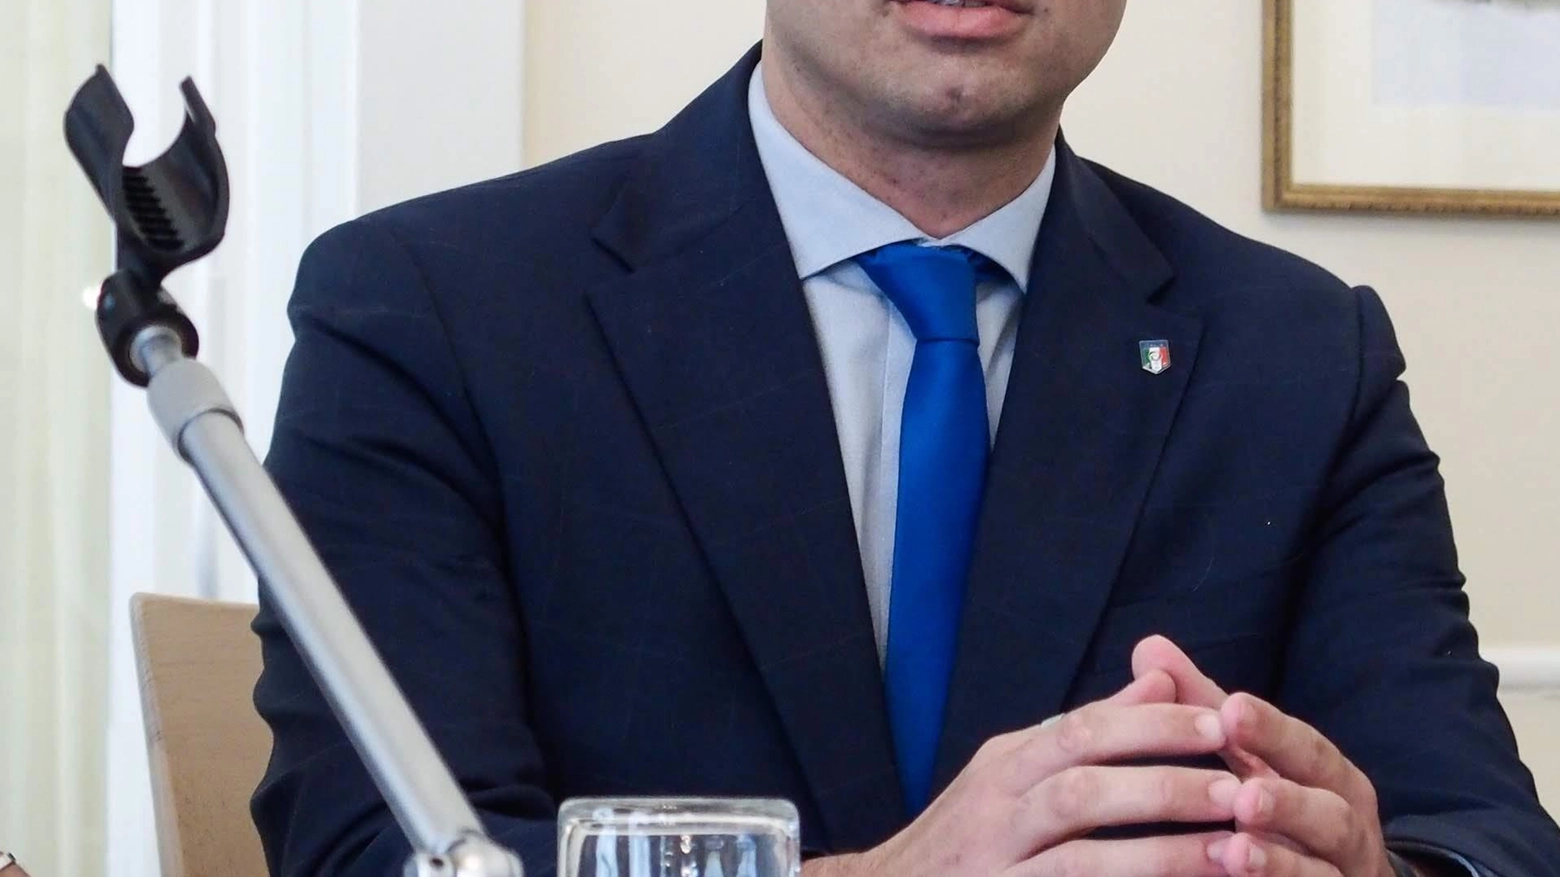 Il sindaco Giorgetti traccia il bilancio del mandato: accertati 8,2 milioni di evasione fiscale, abbassato il debito pro capite